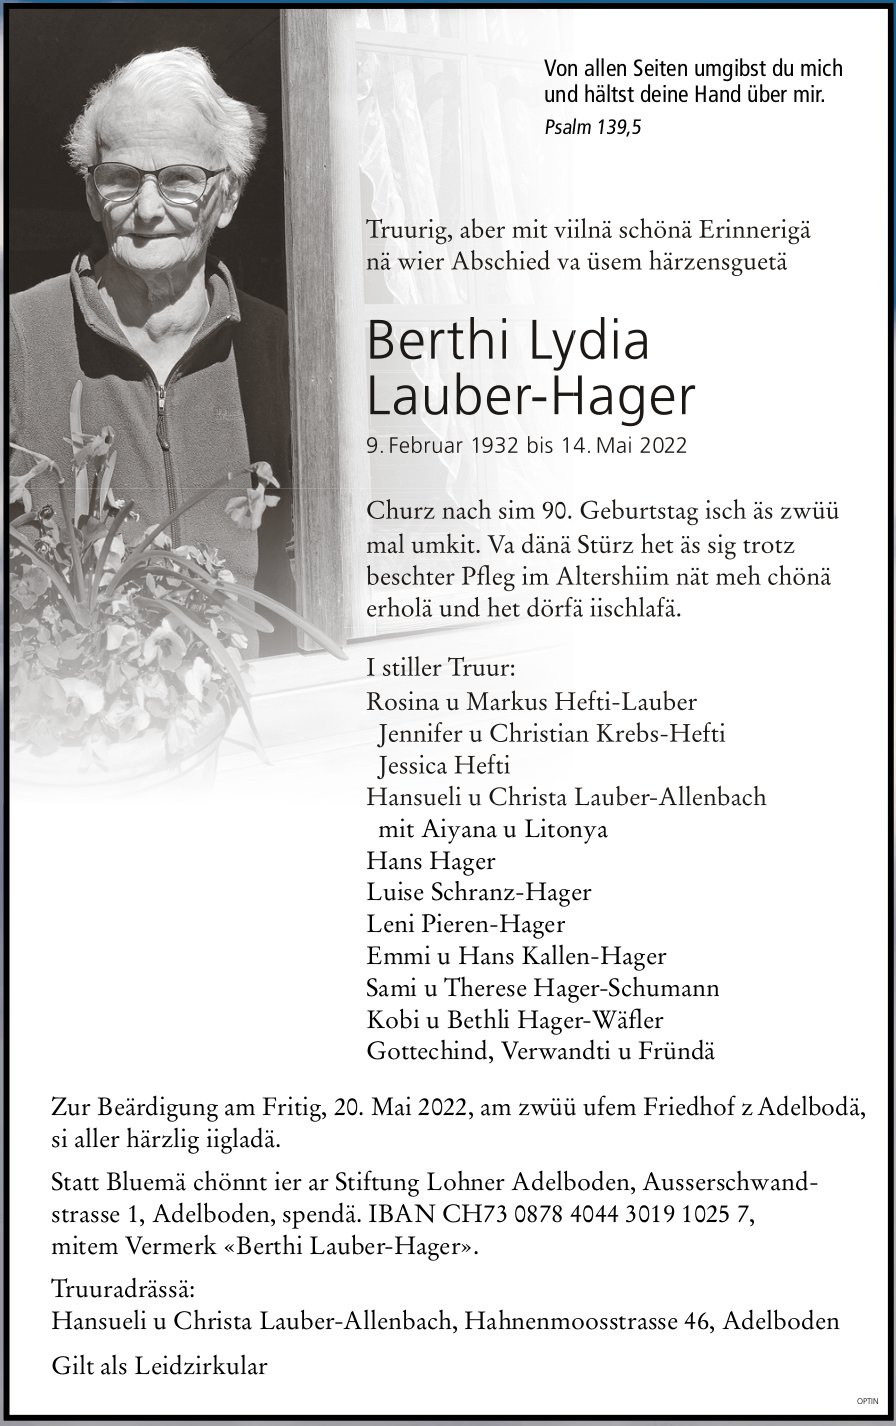 Berthi Lydia Lauber-Hager, Mai 2022 / TA